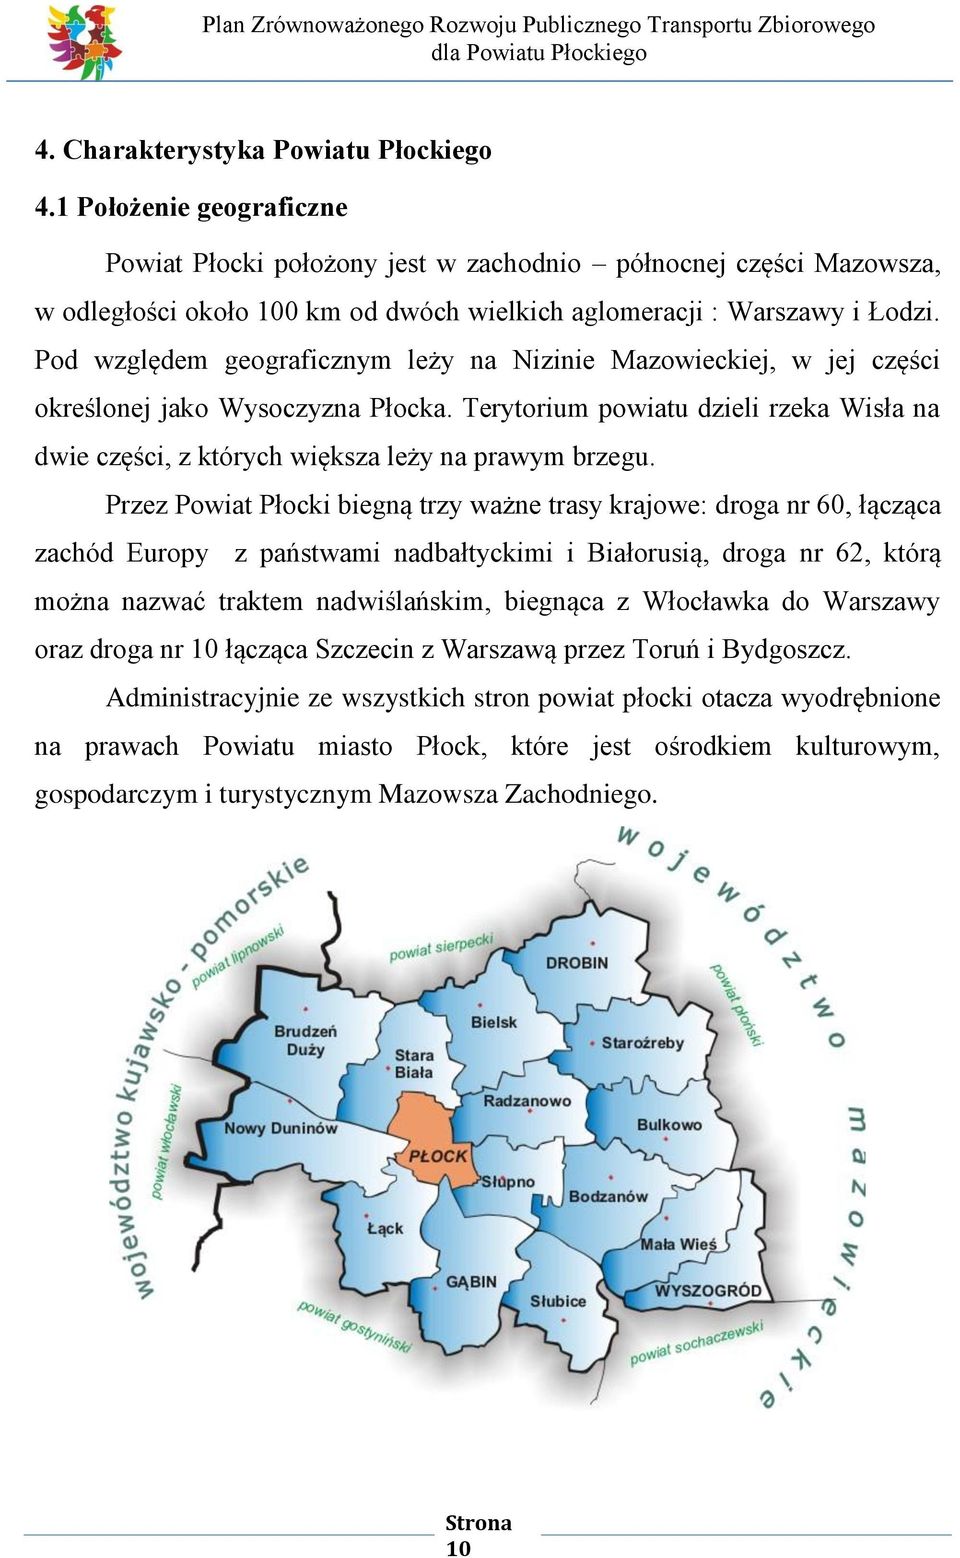 Pod względem geograficznym leży na Nizinie Mazowieckiej, w jej części określonej jako Wysoczyzna Płocka. Terytorium powiatu dzieli rzeka Wisła na dwie części, z których większa leży na prawym brzegu.